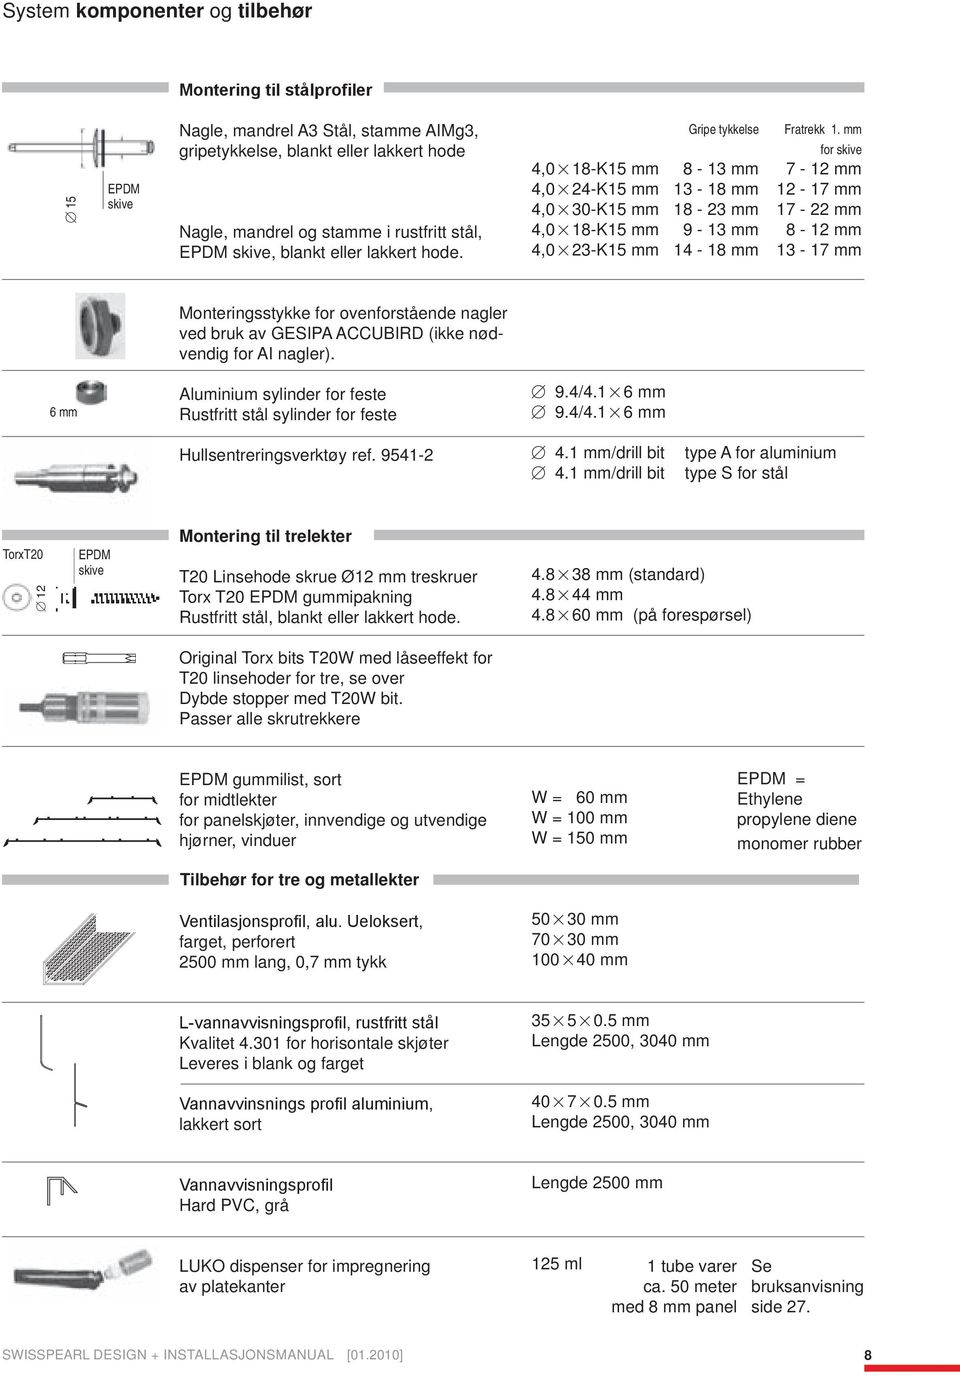 mm for skive,08-k mm 8 - mm 7 - mm,0-k mm - 8 mm - 7 mm,00-k mm 8 - mm 7 - mm,08-k mm 9 - mm 8 - mm,0-k mm - 8 mm - 7 mm Monteringsstykke for ovenforstående nagler ved bruk av GESIPA ACCUBIRD (ikke